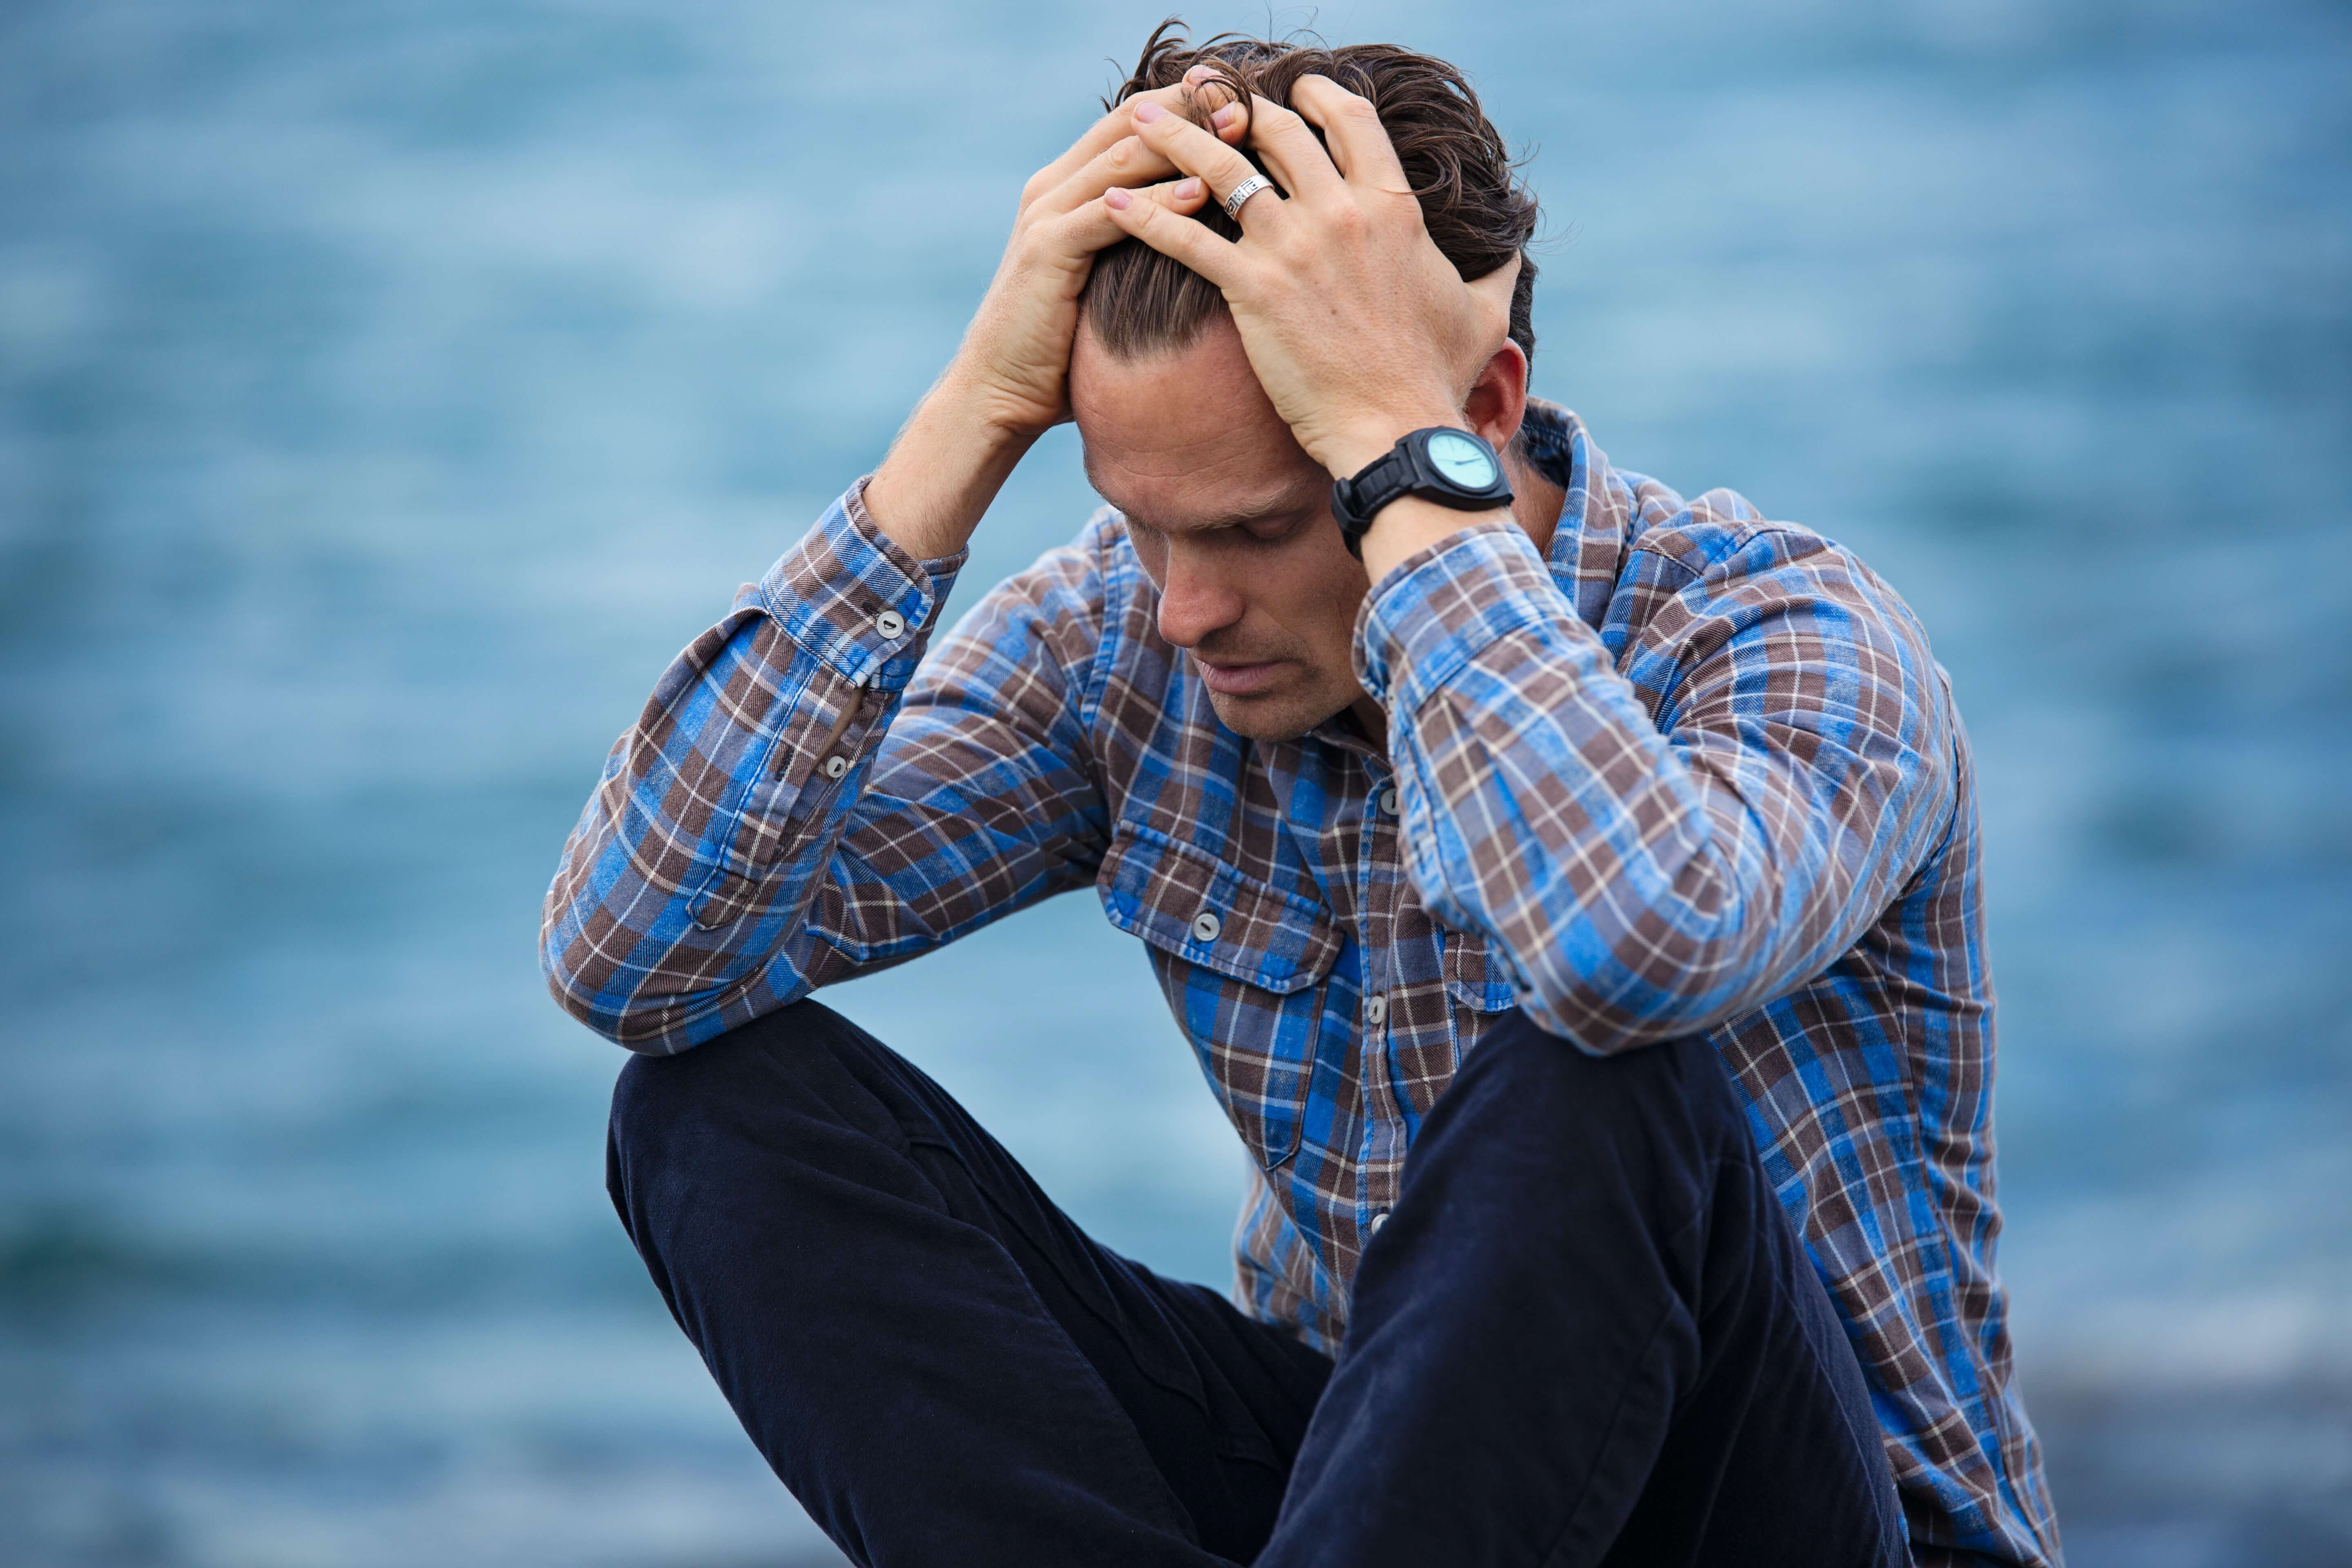 هل يؤثر القلق على صحتك الجسدية؟ وكيف يمكن علاجه؟